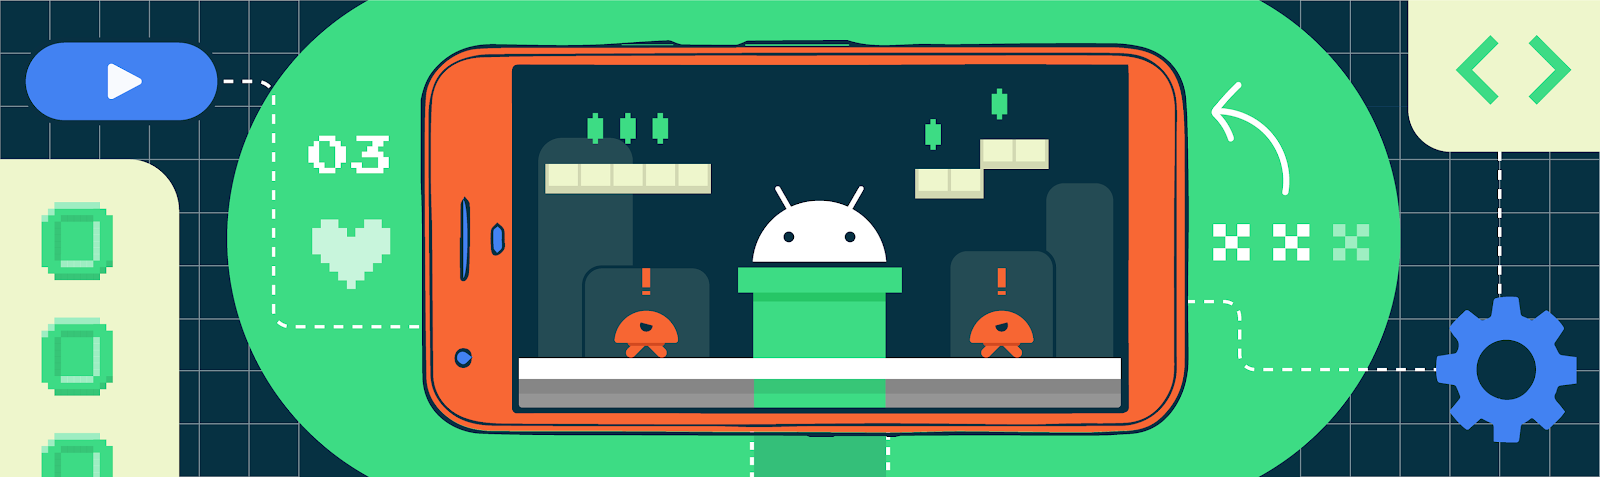 Logotipo do Android com a temática de jogos em segundo plano dentro de um smartphone.